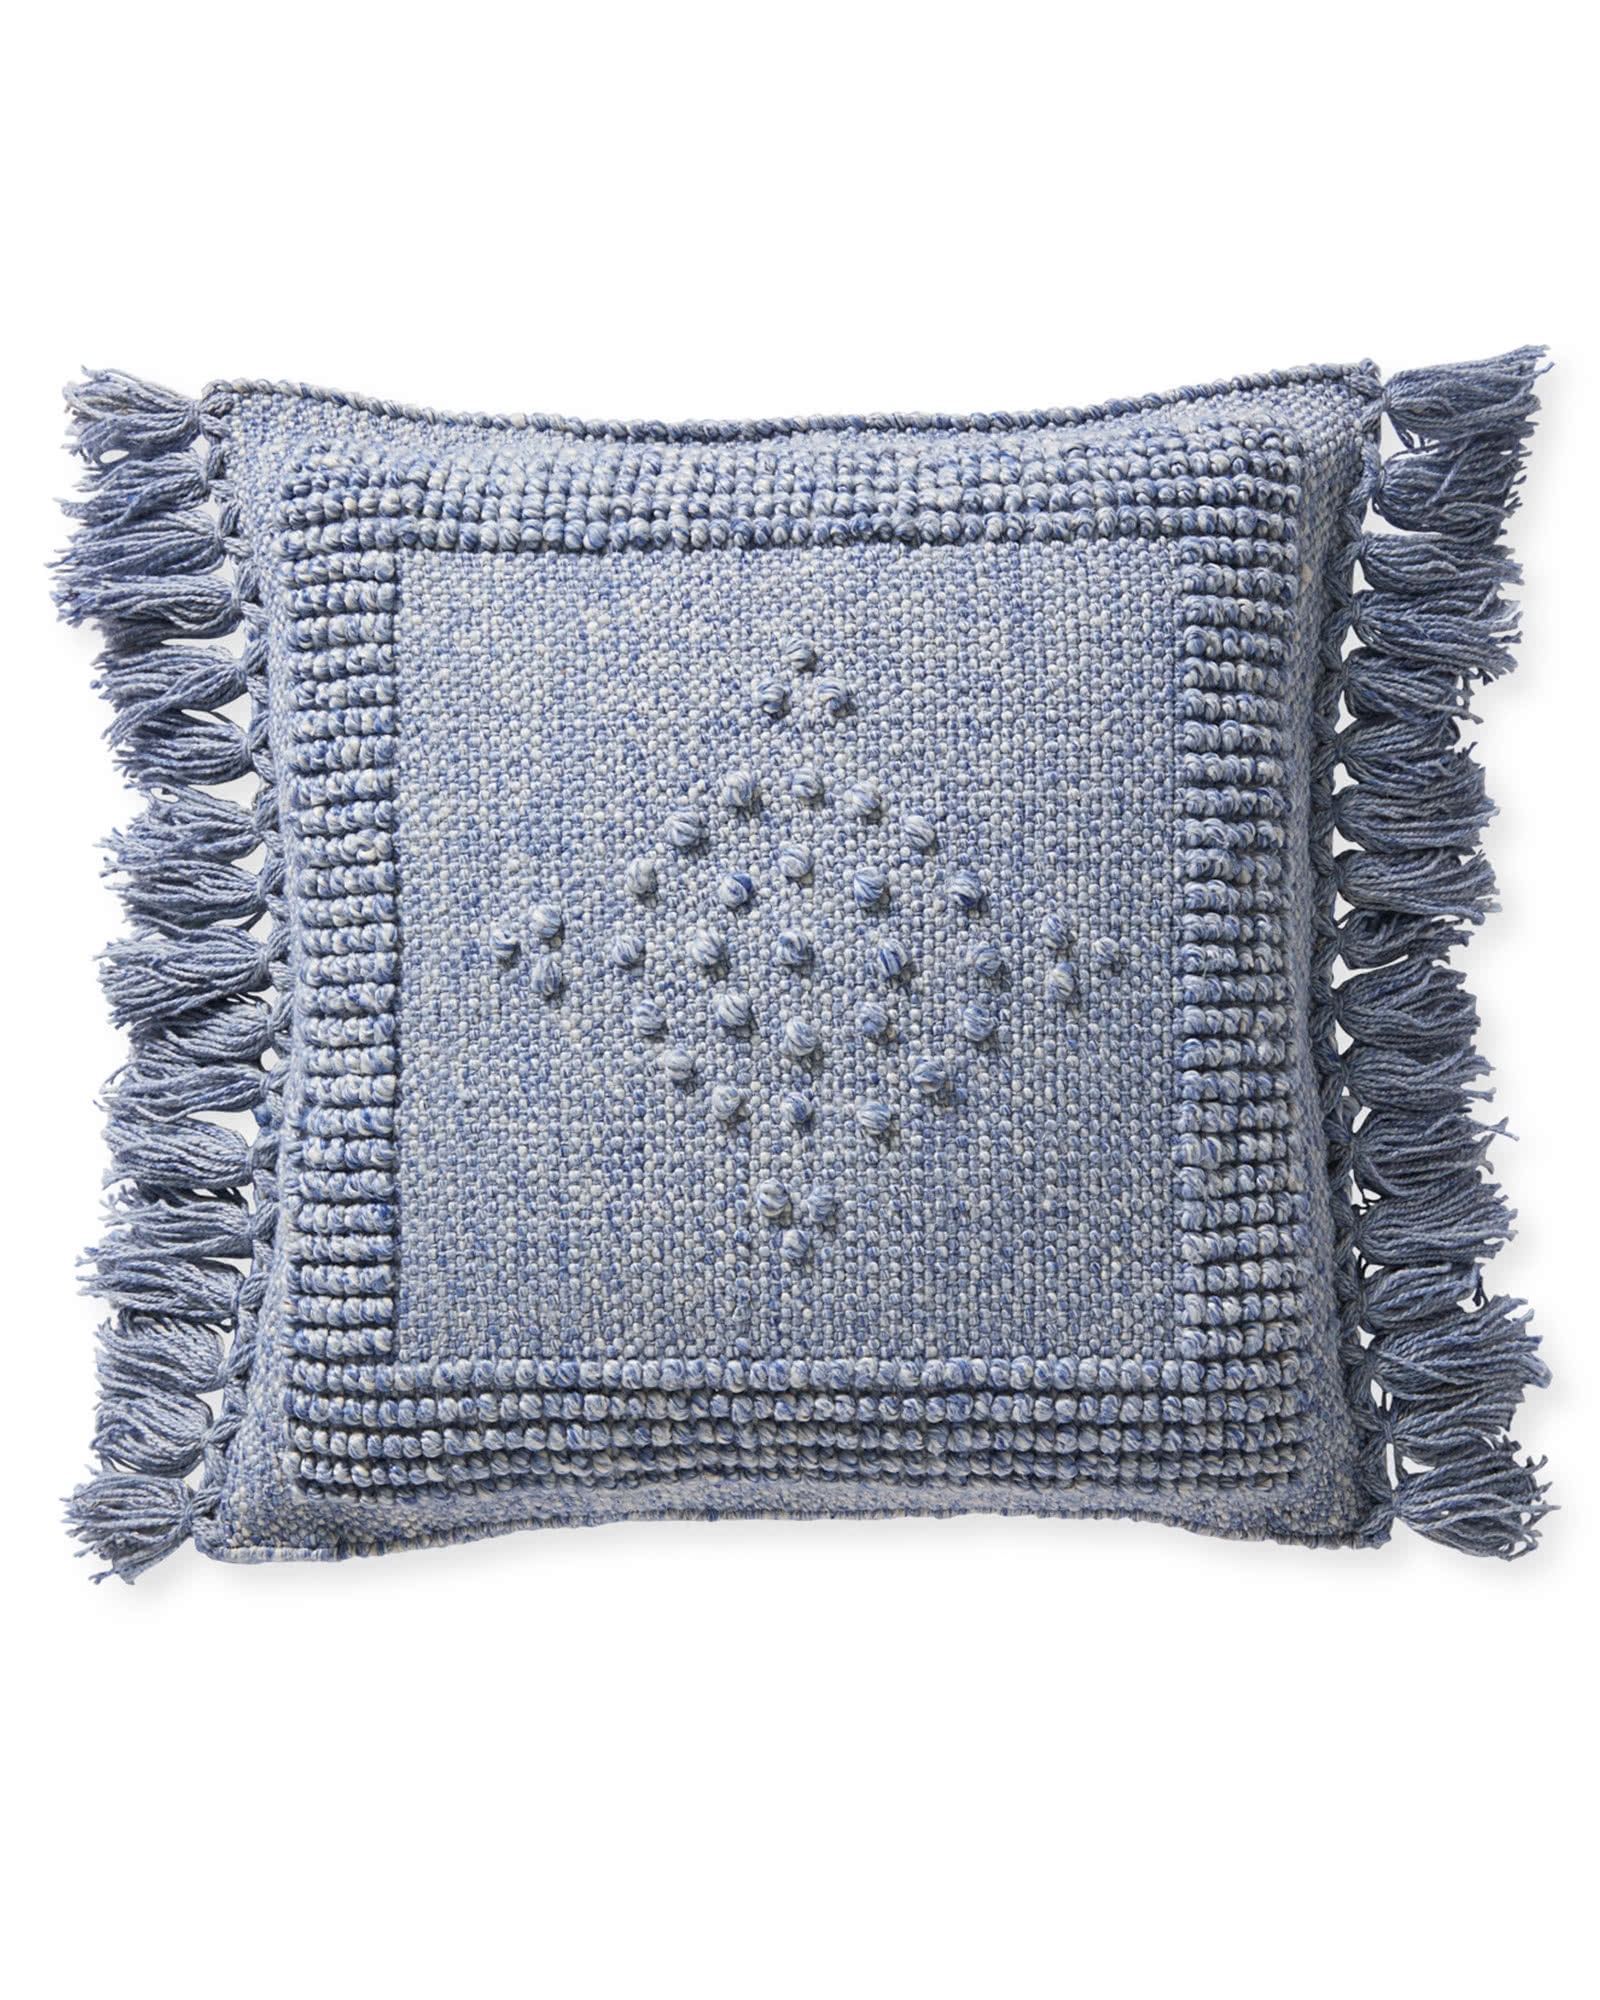 Montecito Pillow Cover - Coastal Blue - Image 0